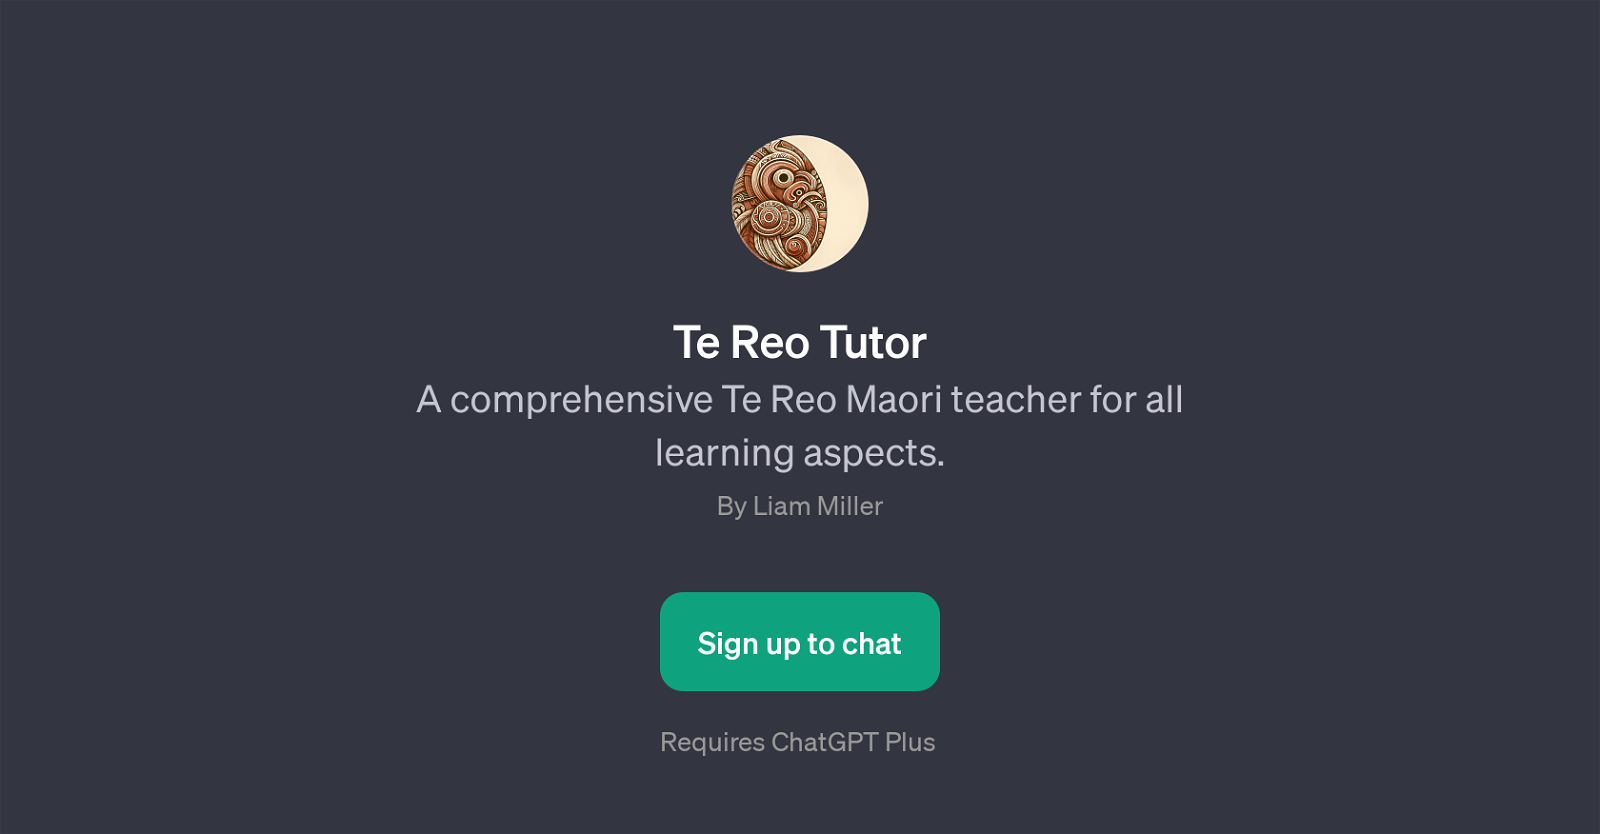 Te Reo Tutor website